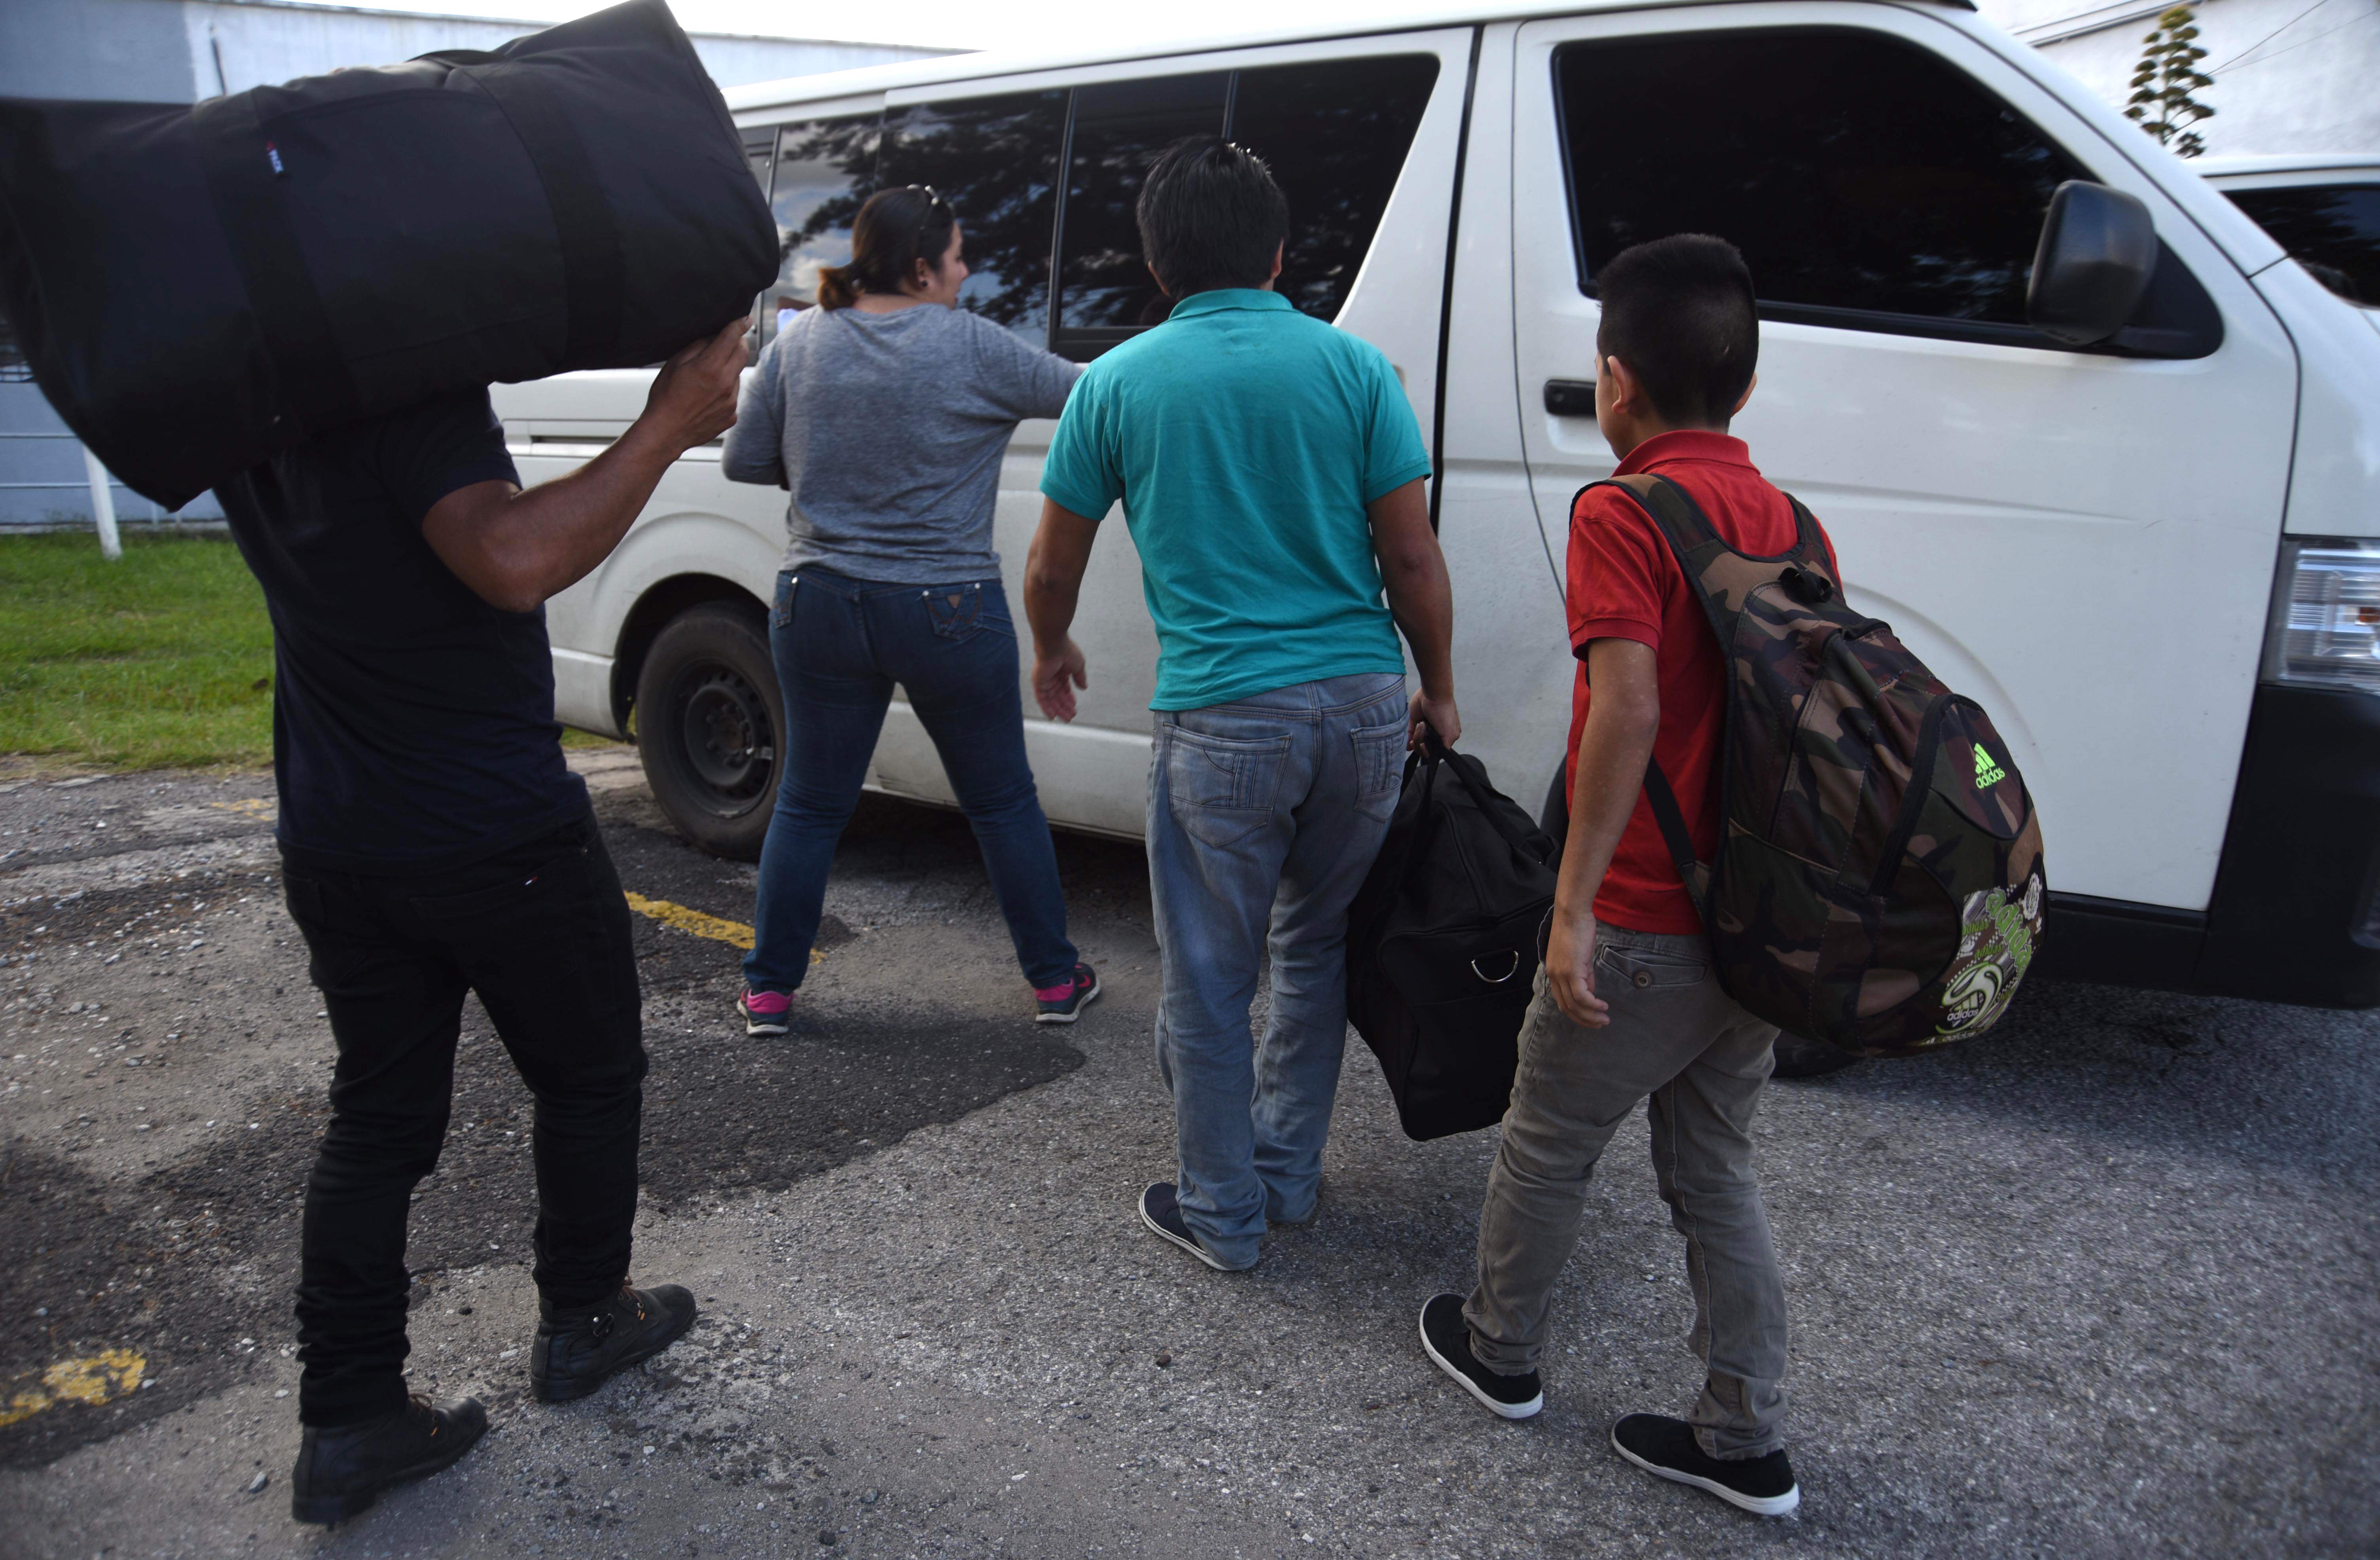  وصول المهاجرين إلى سيارات تقلهم إلى جواتيمالا 